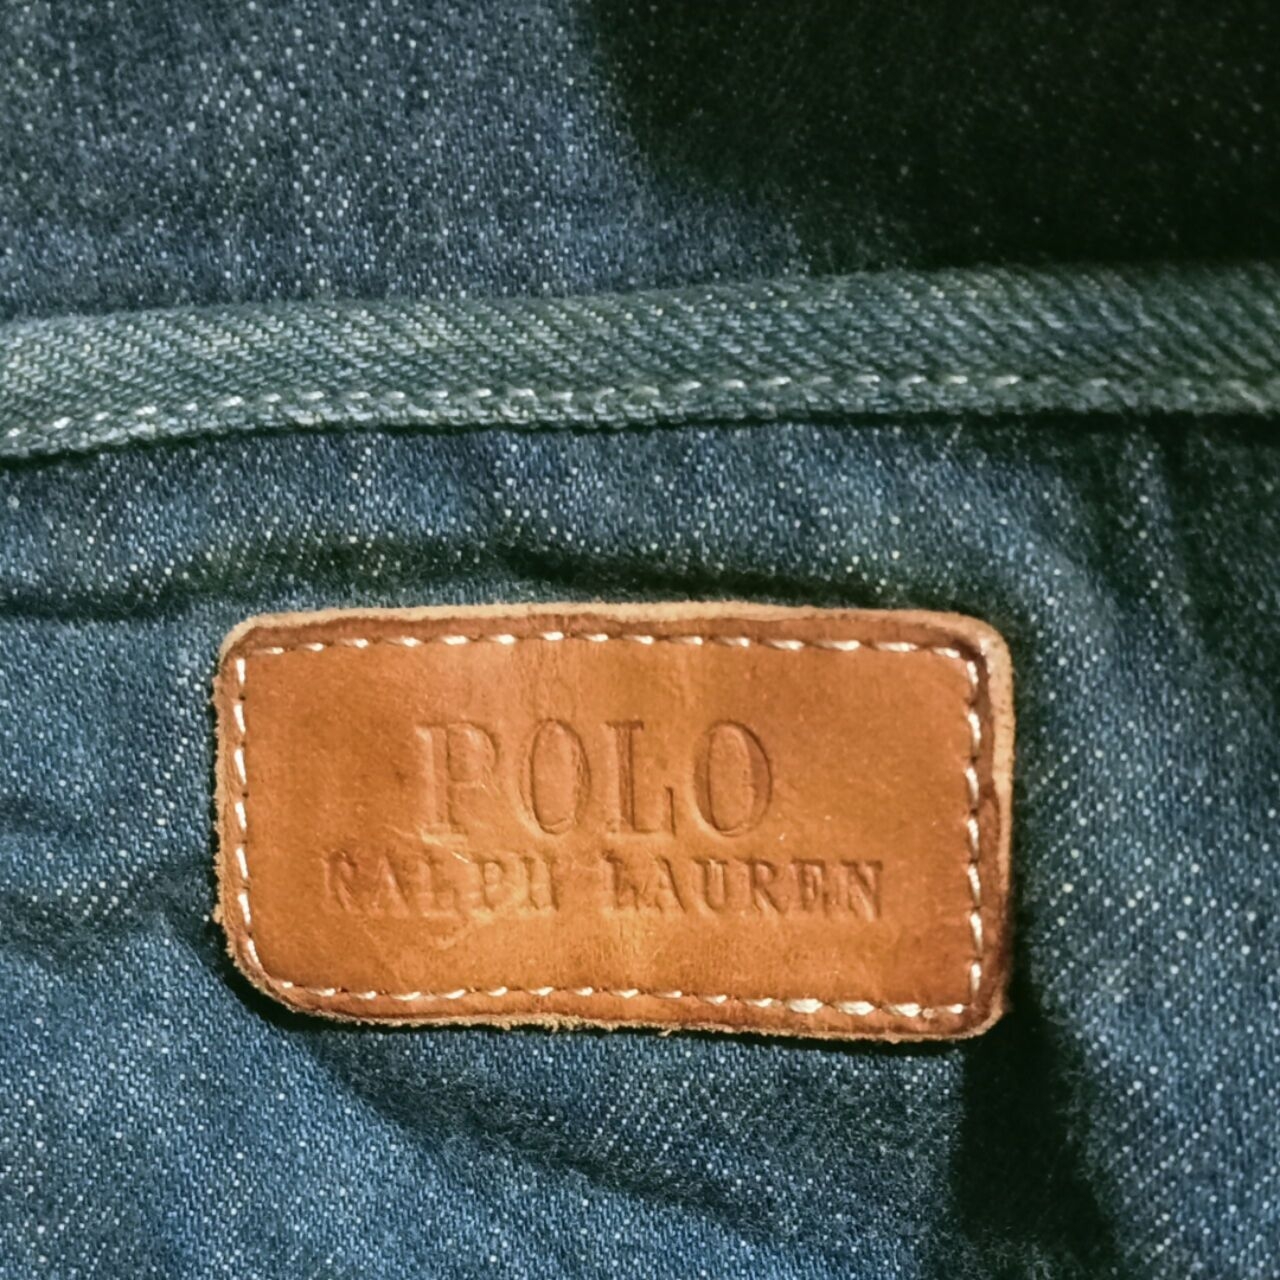 Polo Ralph Lauren Navy Denim Tote Bag